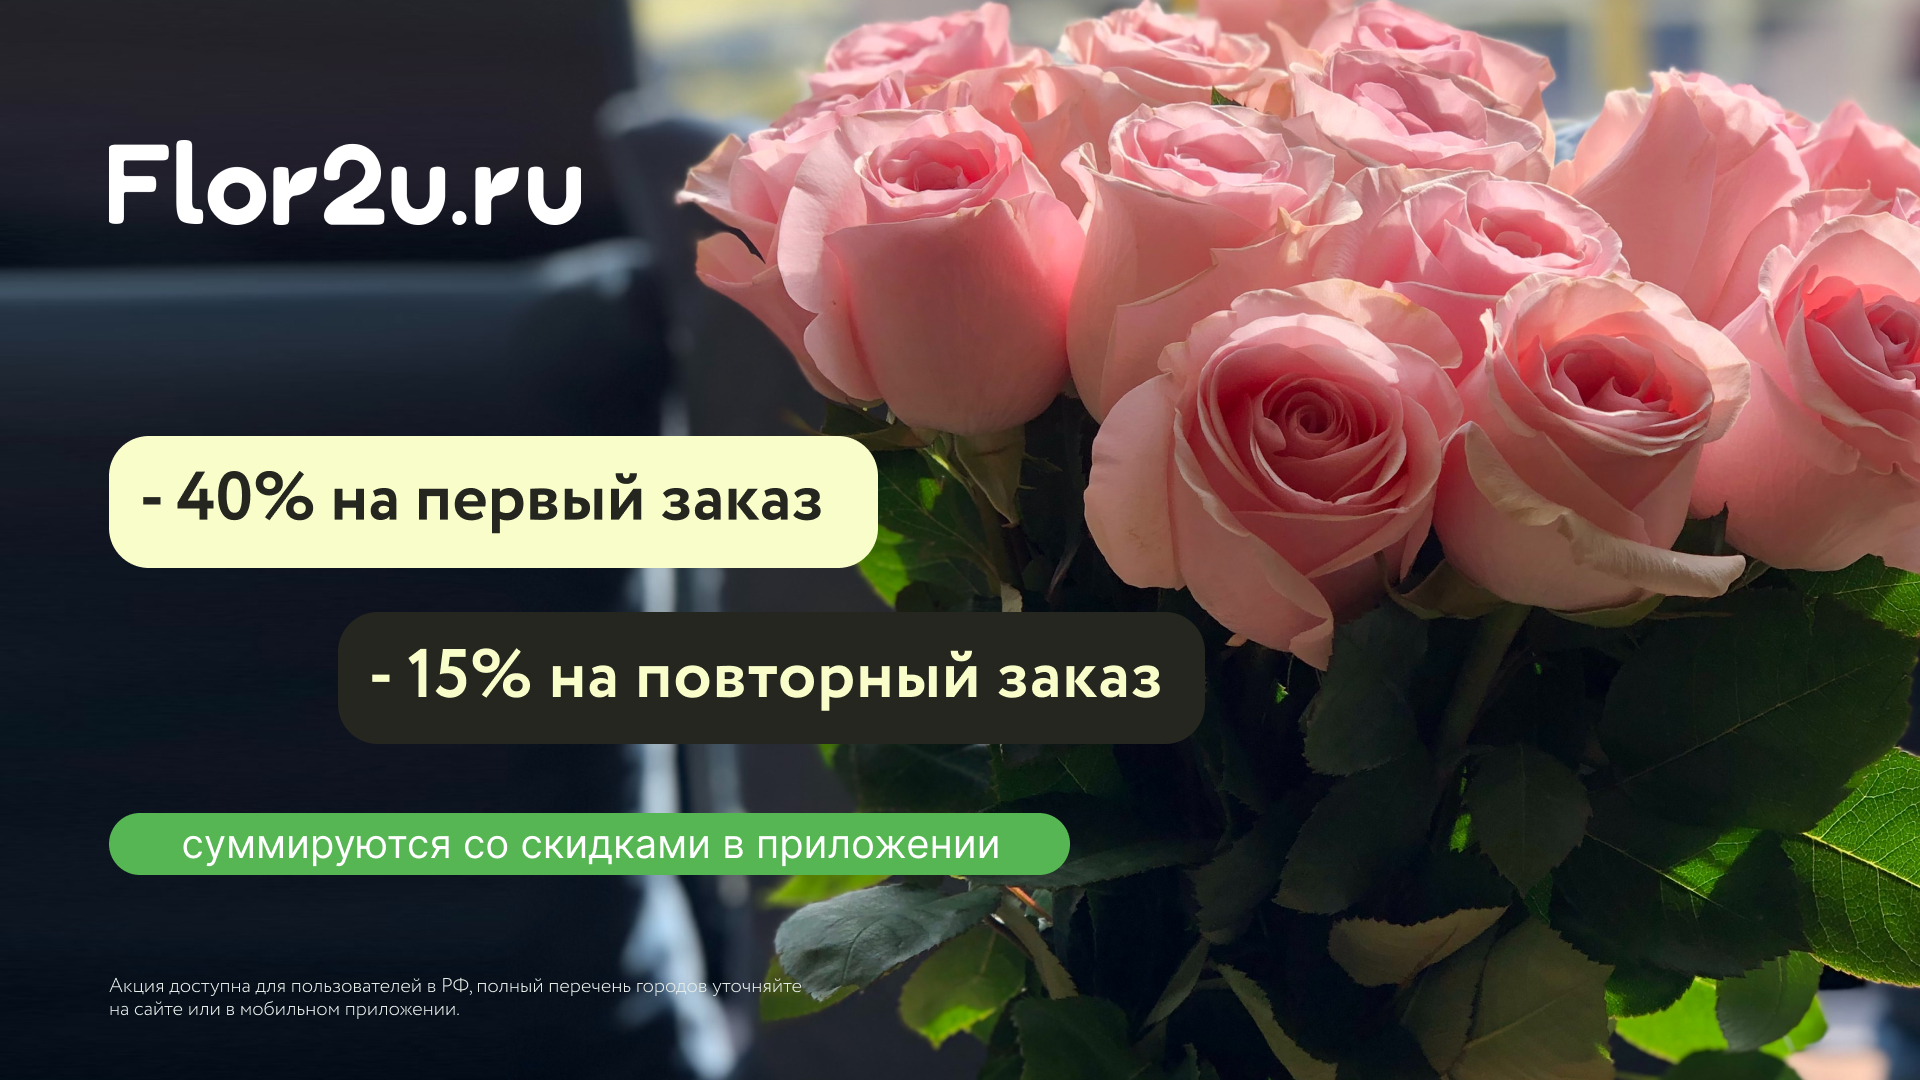 Промокод Flor2u — получи скидку 40% на первый заказ в мобильном приложении! Промокод на цветы.